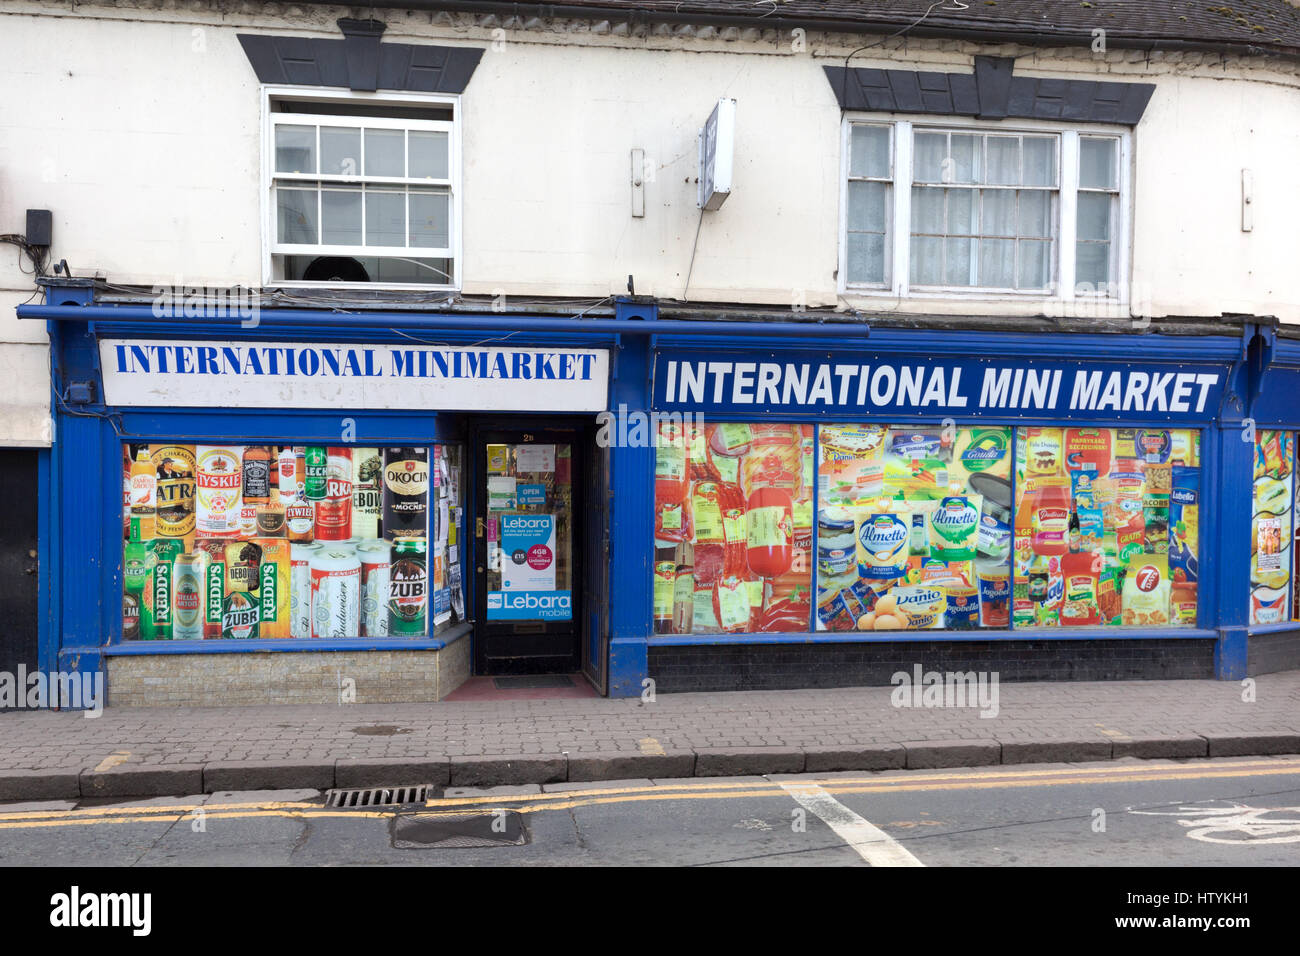 International Mini Market shop, Evehsam, Worcestershire UK Stock Photo